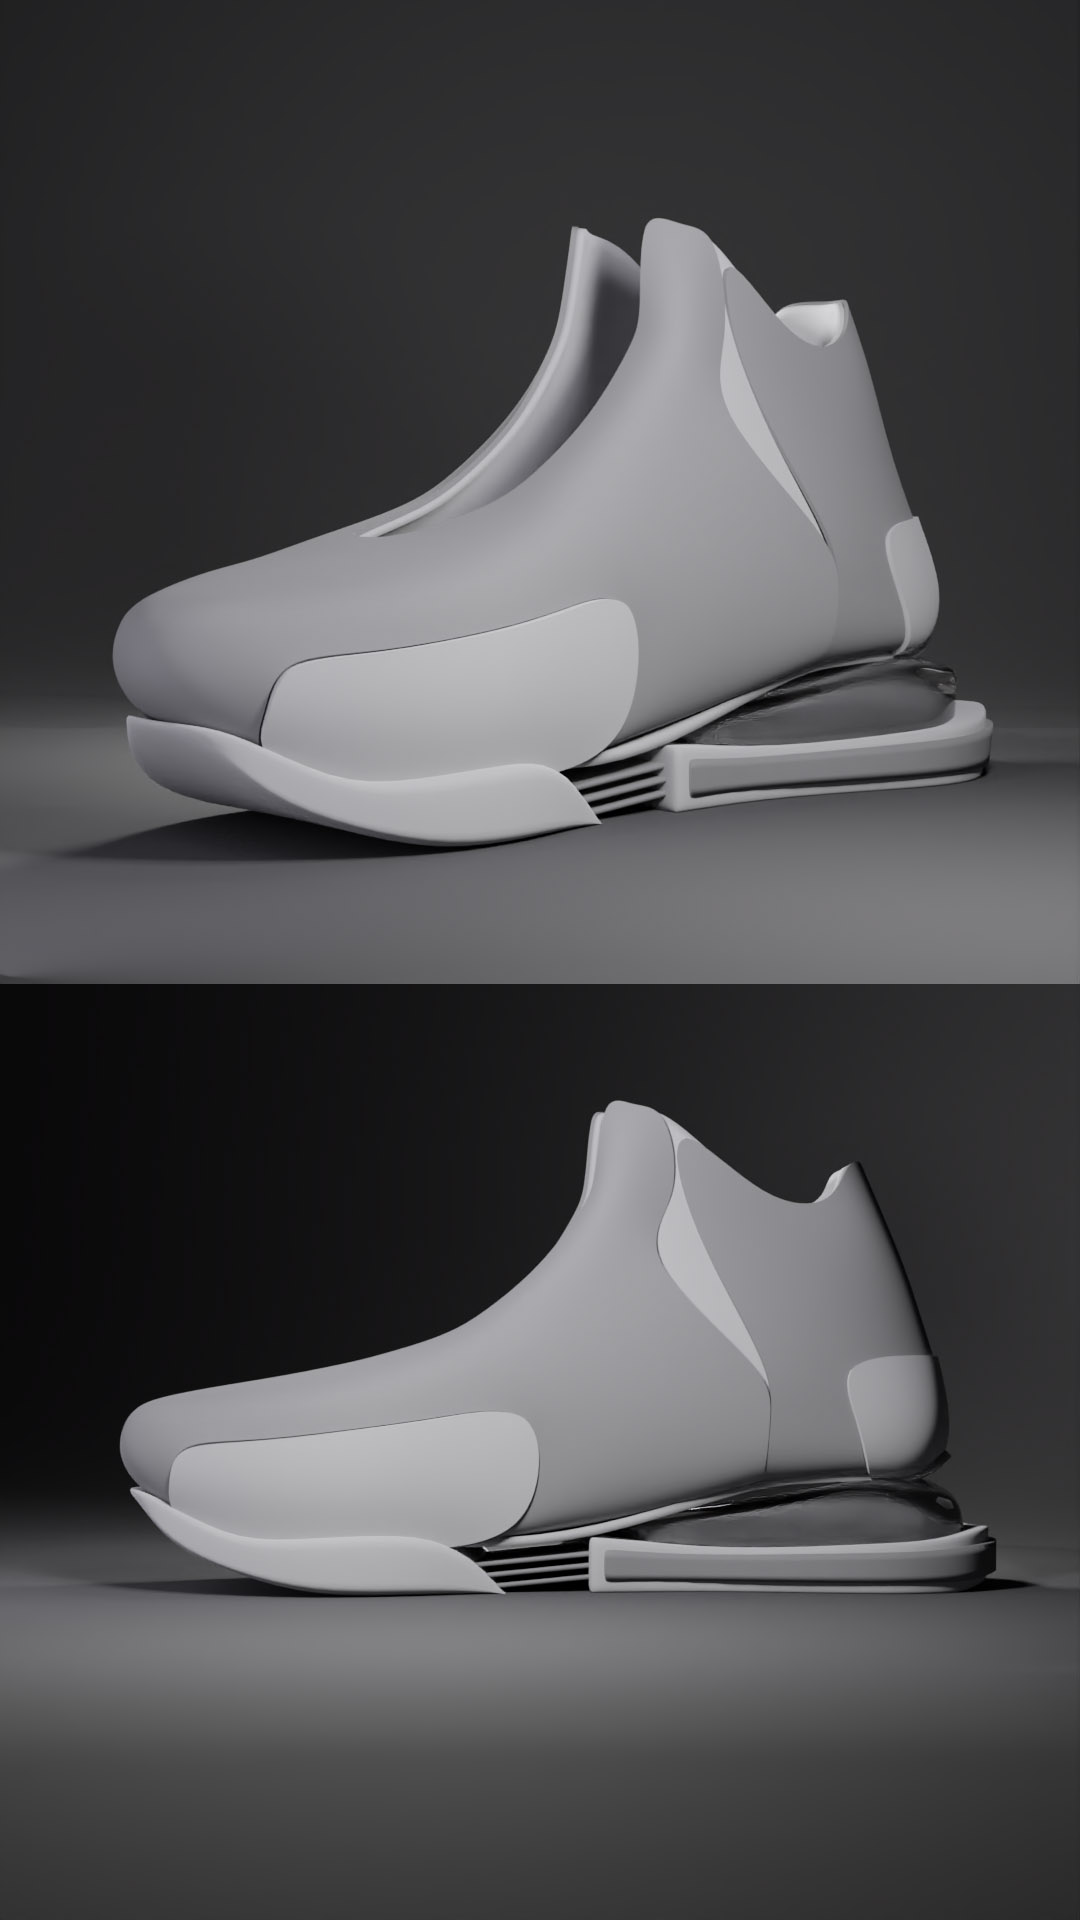 3rd Sneaker Concept Design Since I Started Learning Blender - Works in ...